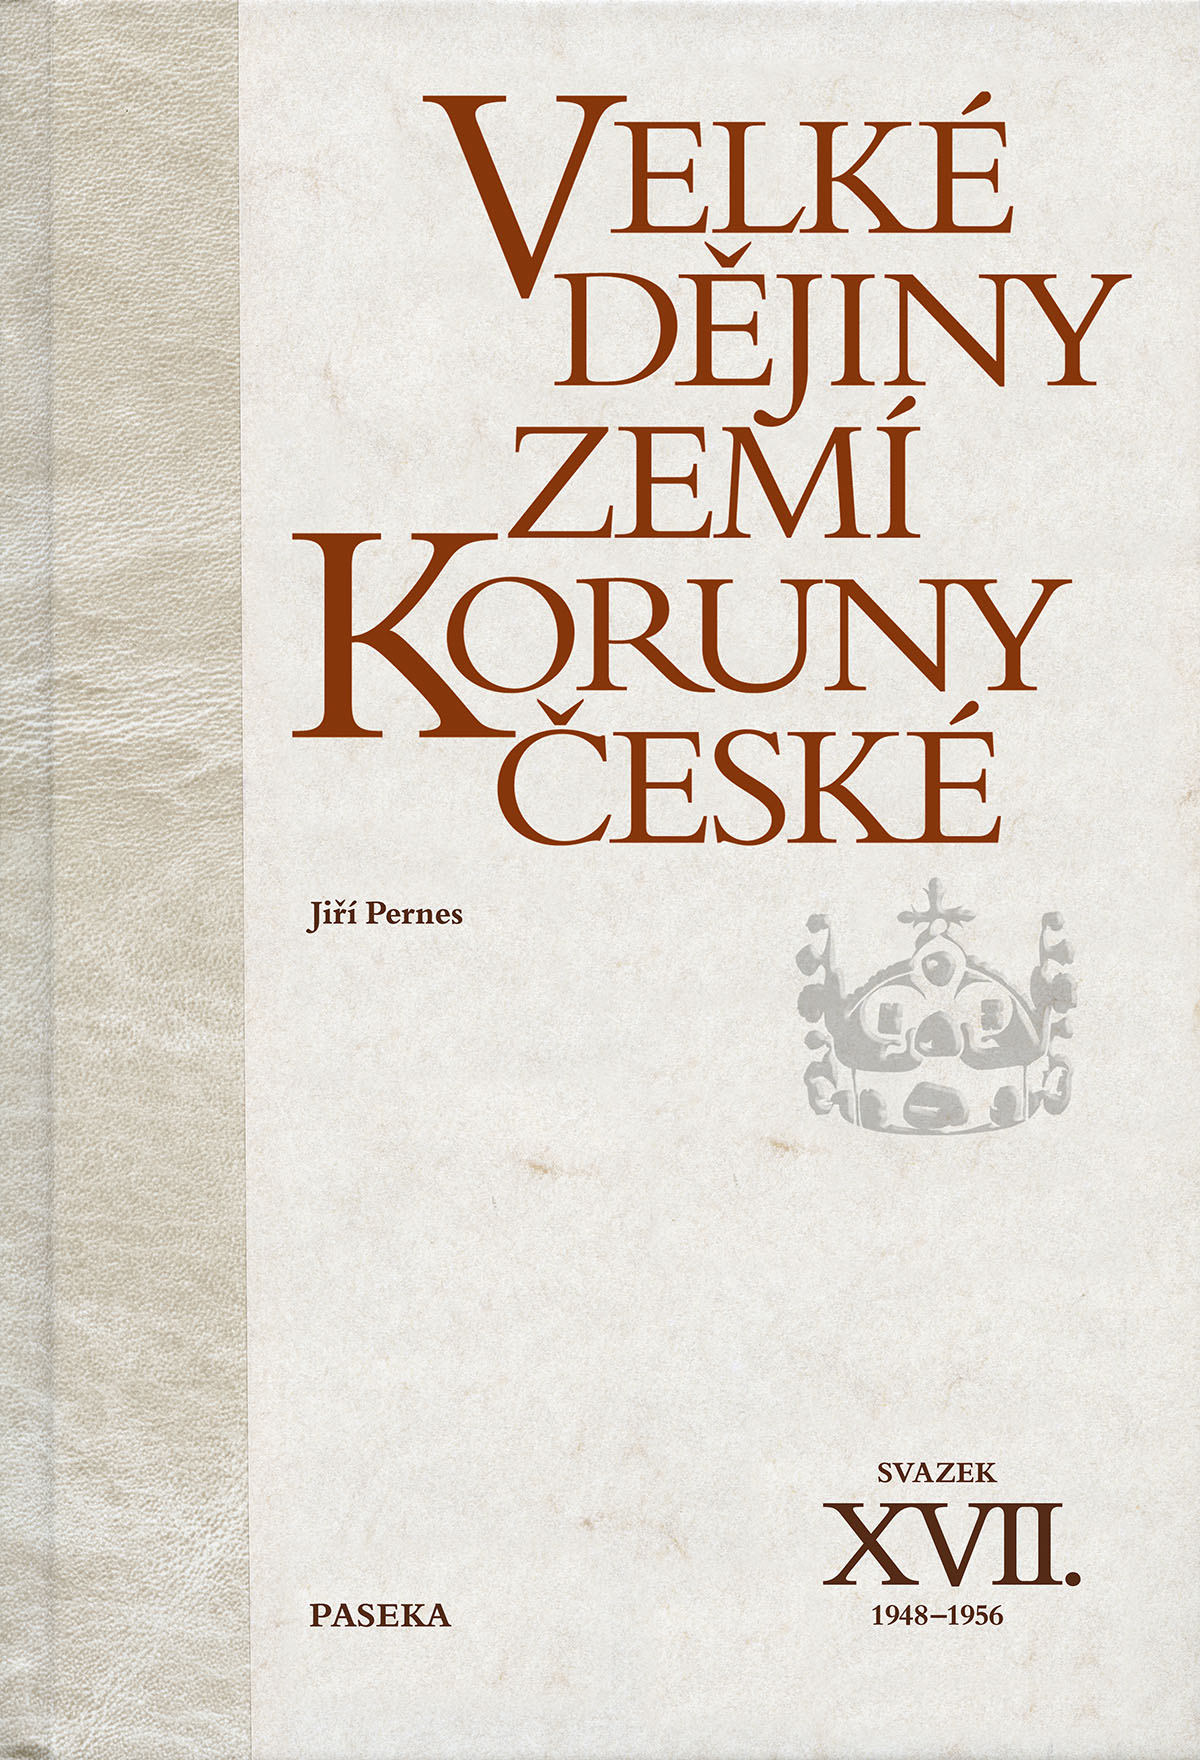 Velké dějiny zemí Koruny české XVII. (1948-1956)